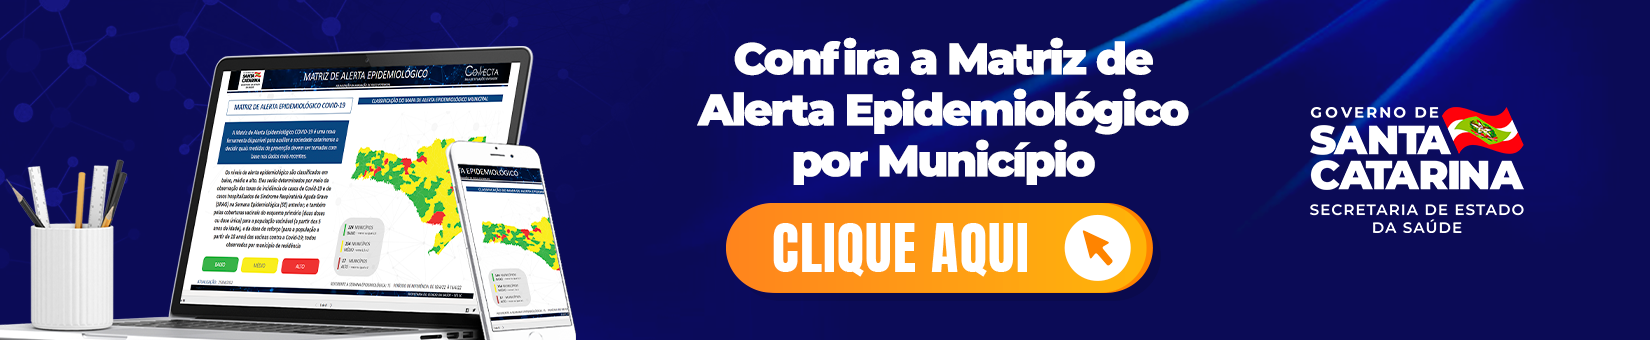 1650x340-Conhea-a-Matriz-de-Alerta-Epidemiolgico